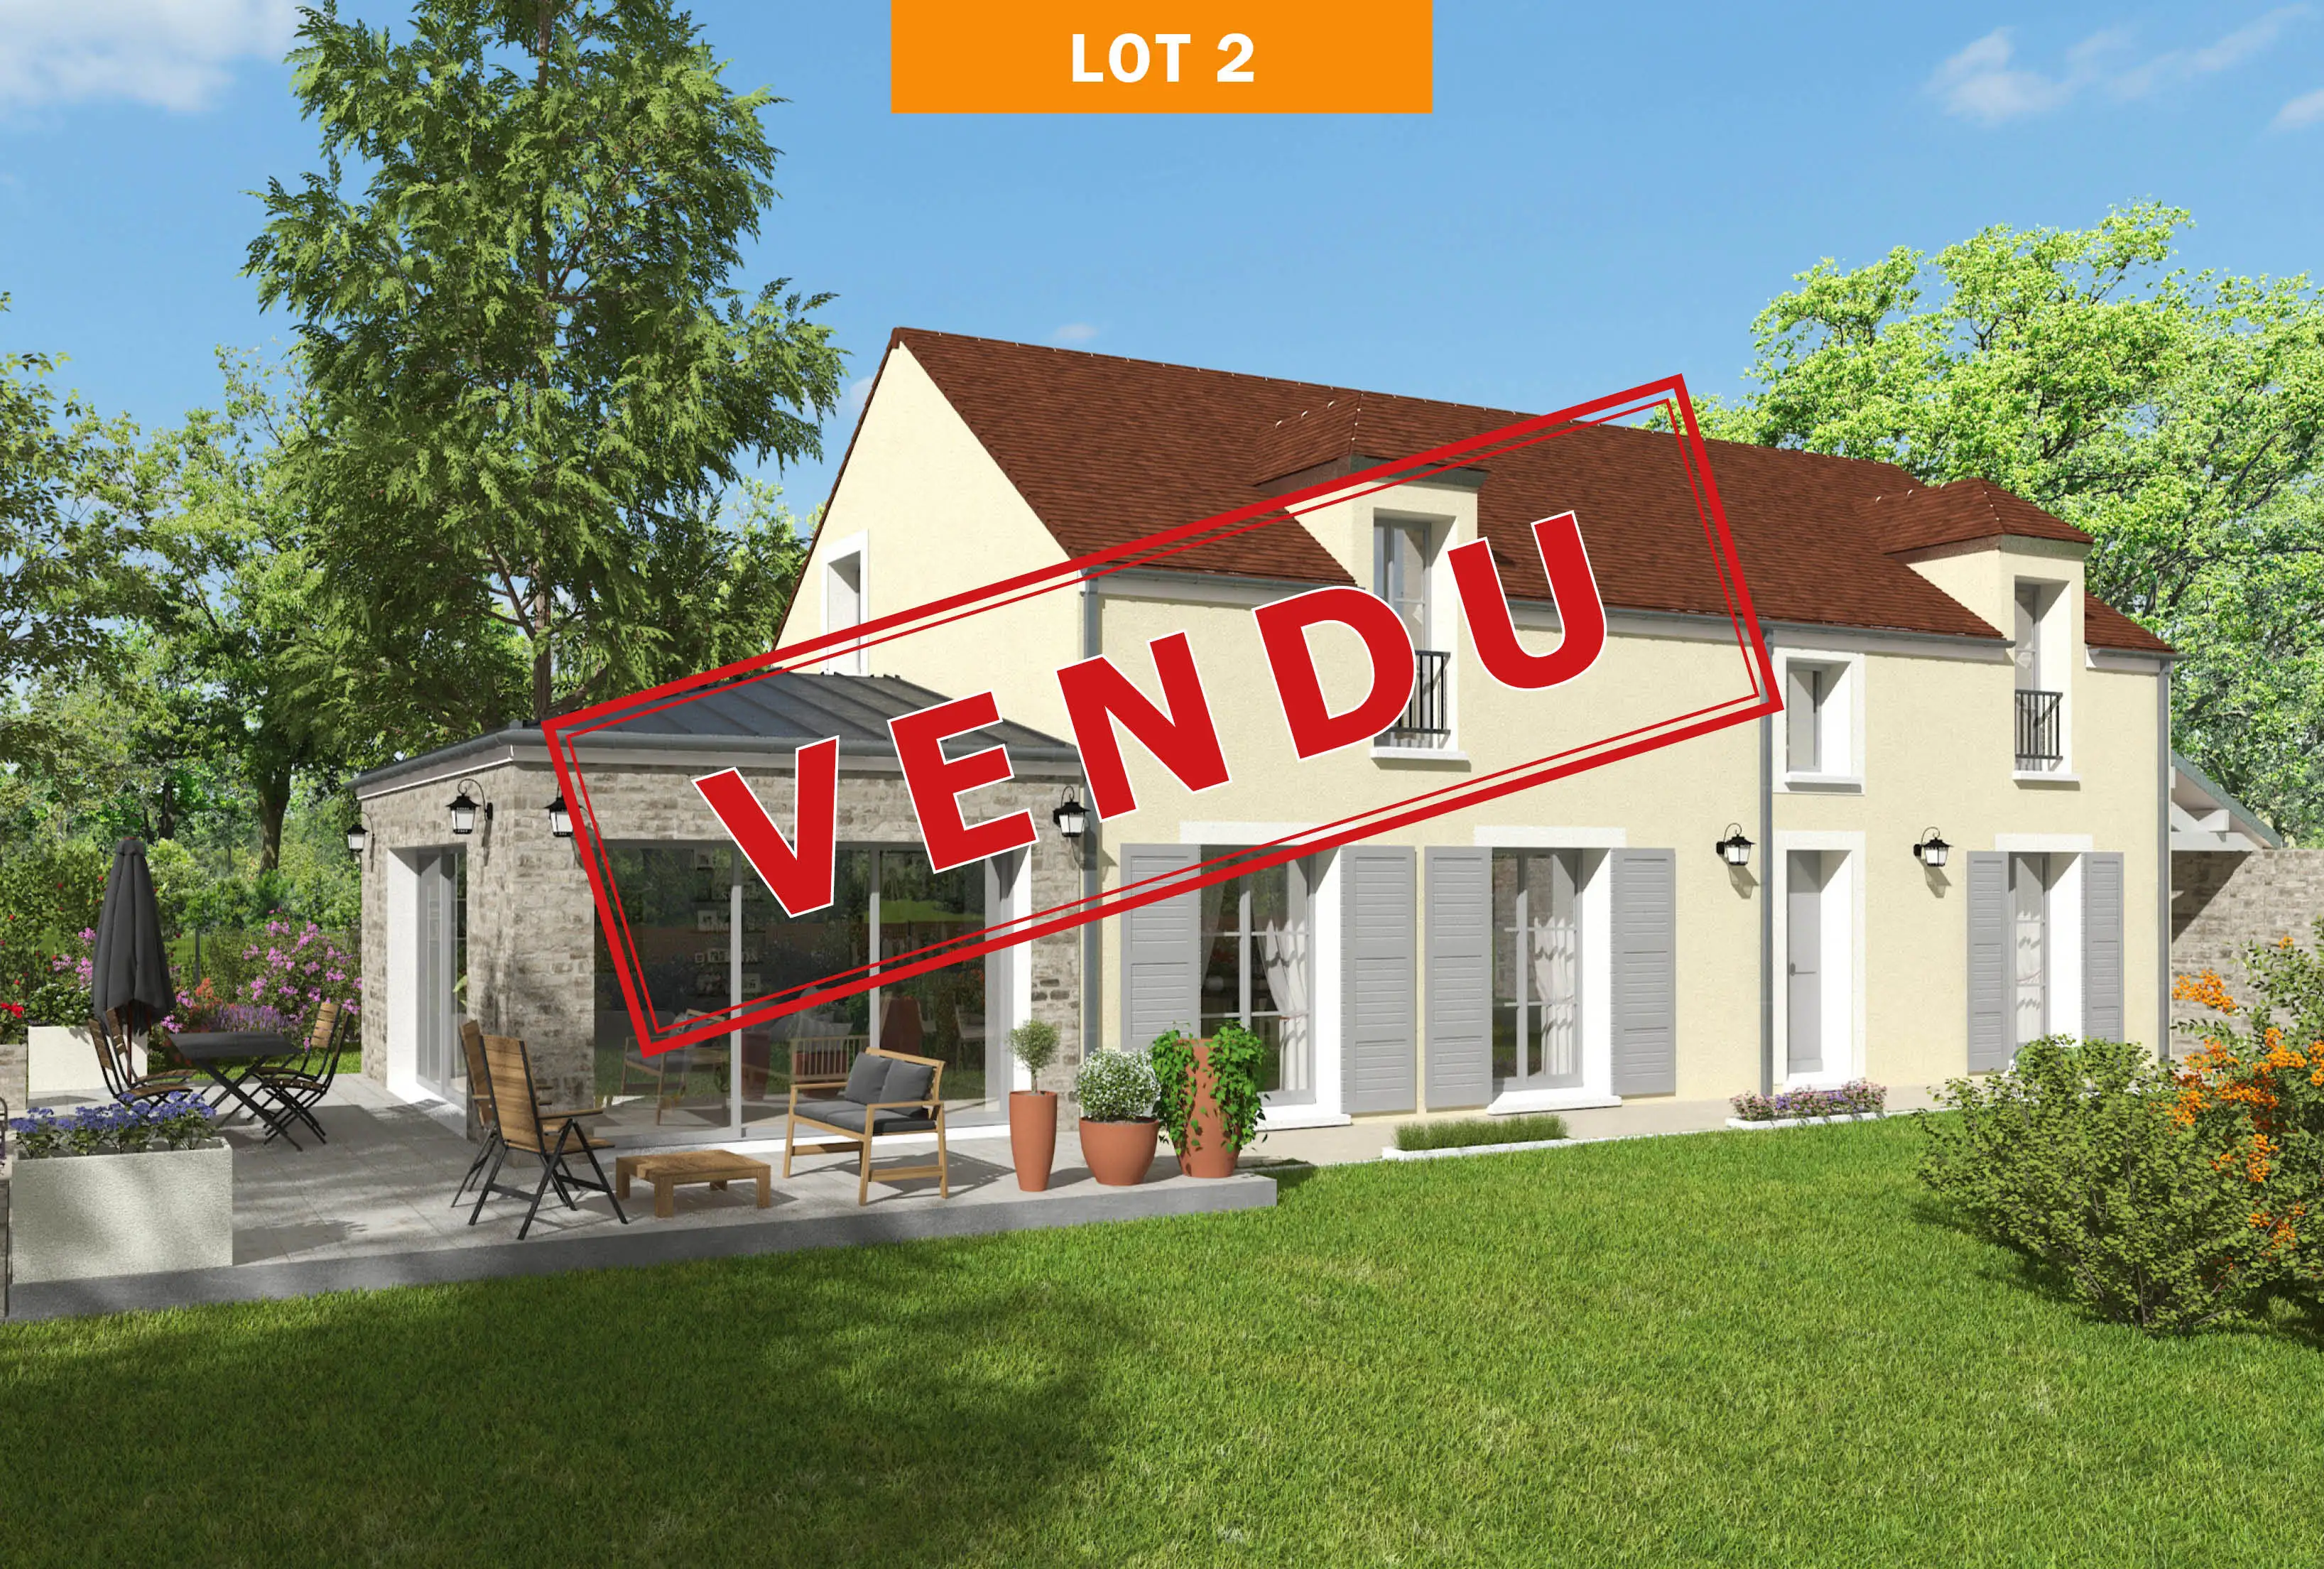 Image exclus Exclusivité immobilière de 645 m² à Bourron-Marlotte (77)